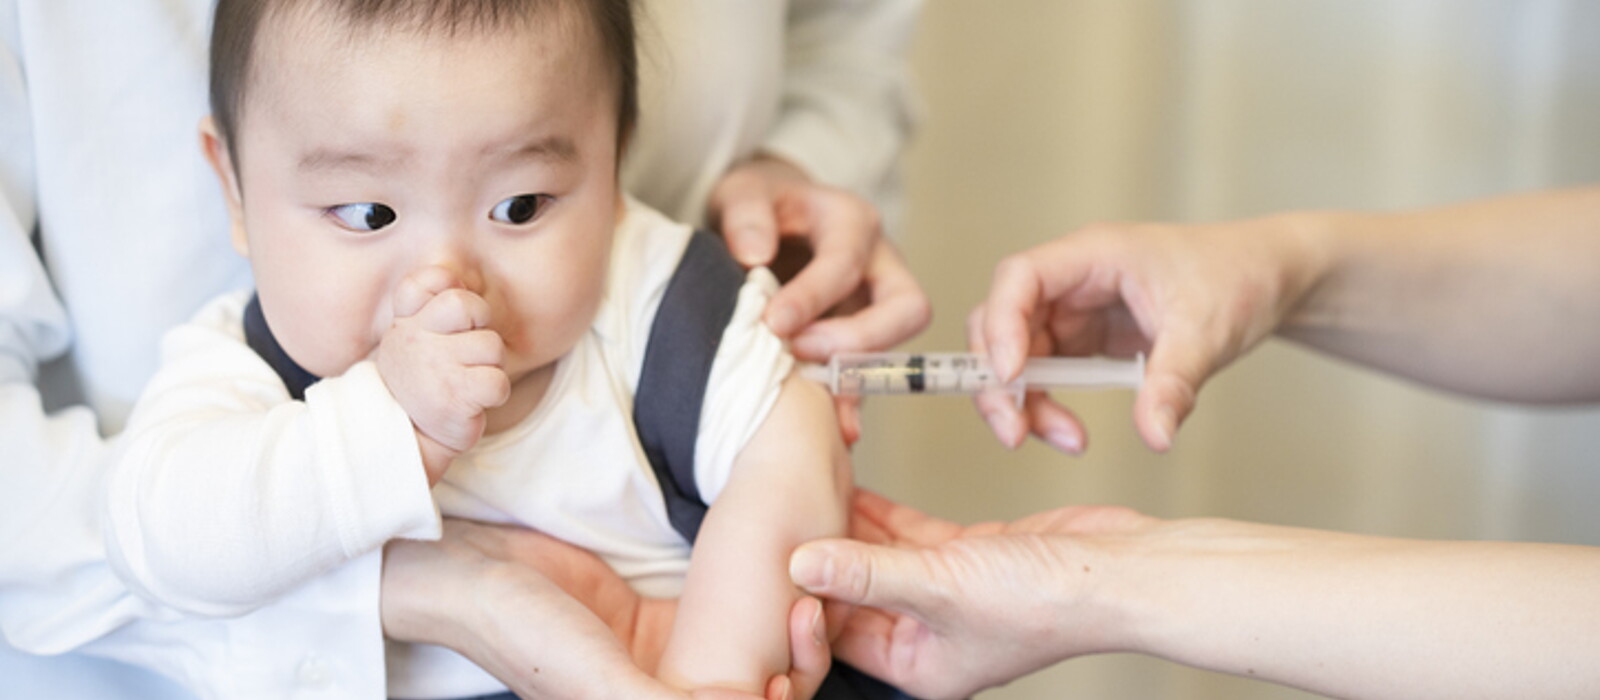 ตารางวัคซีนเด็กตั้งแต่แรกเกิดถึง 1 ขวบ เรื่องสำคัญที่พ่อแม่ต้องรู้